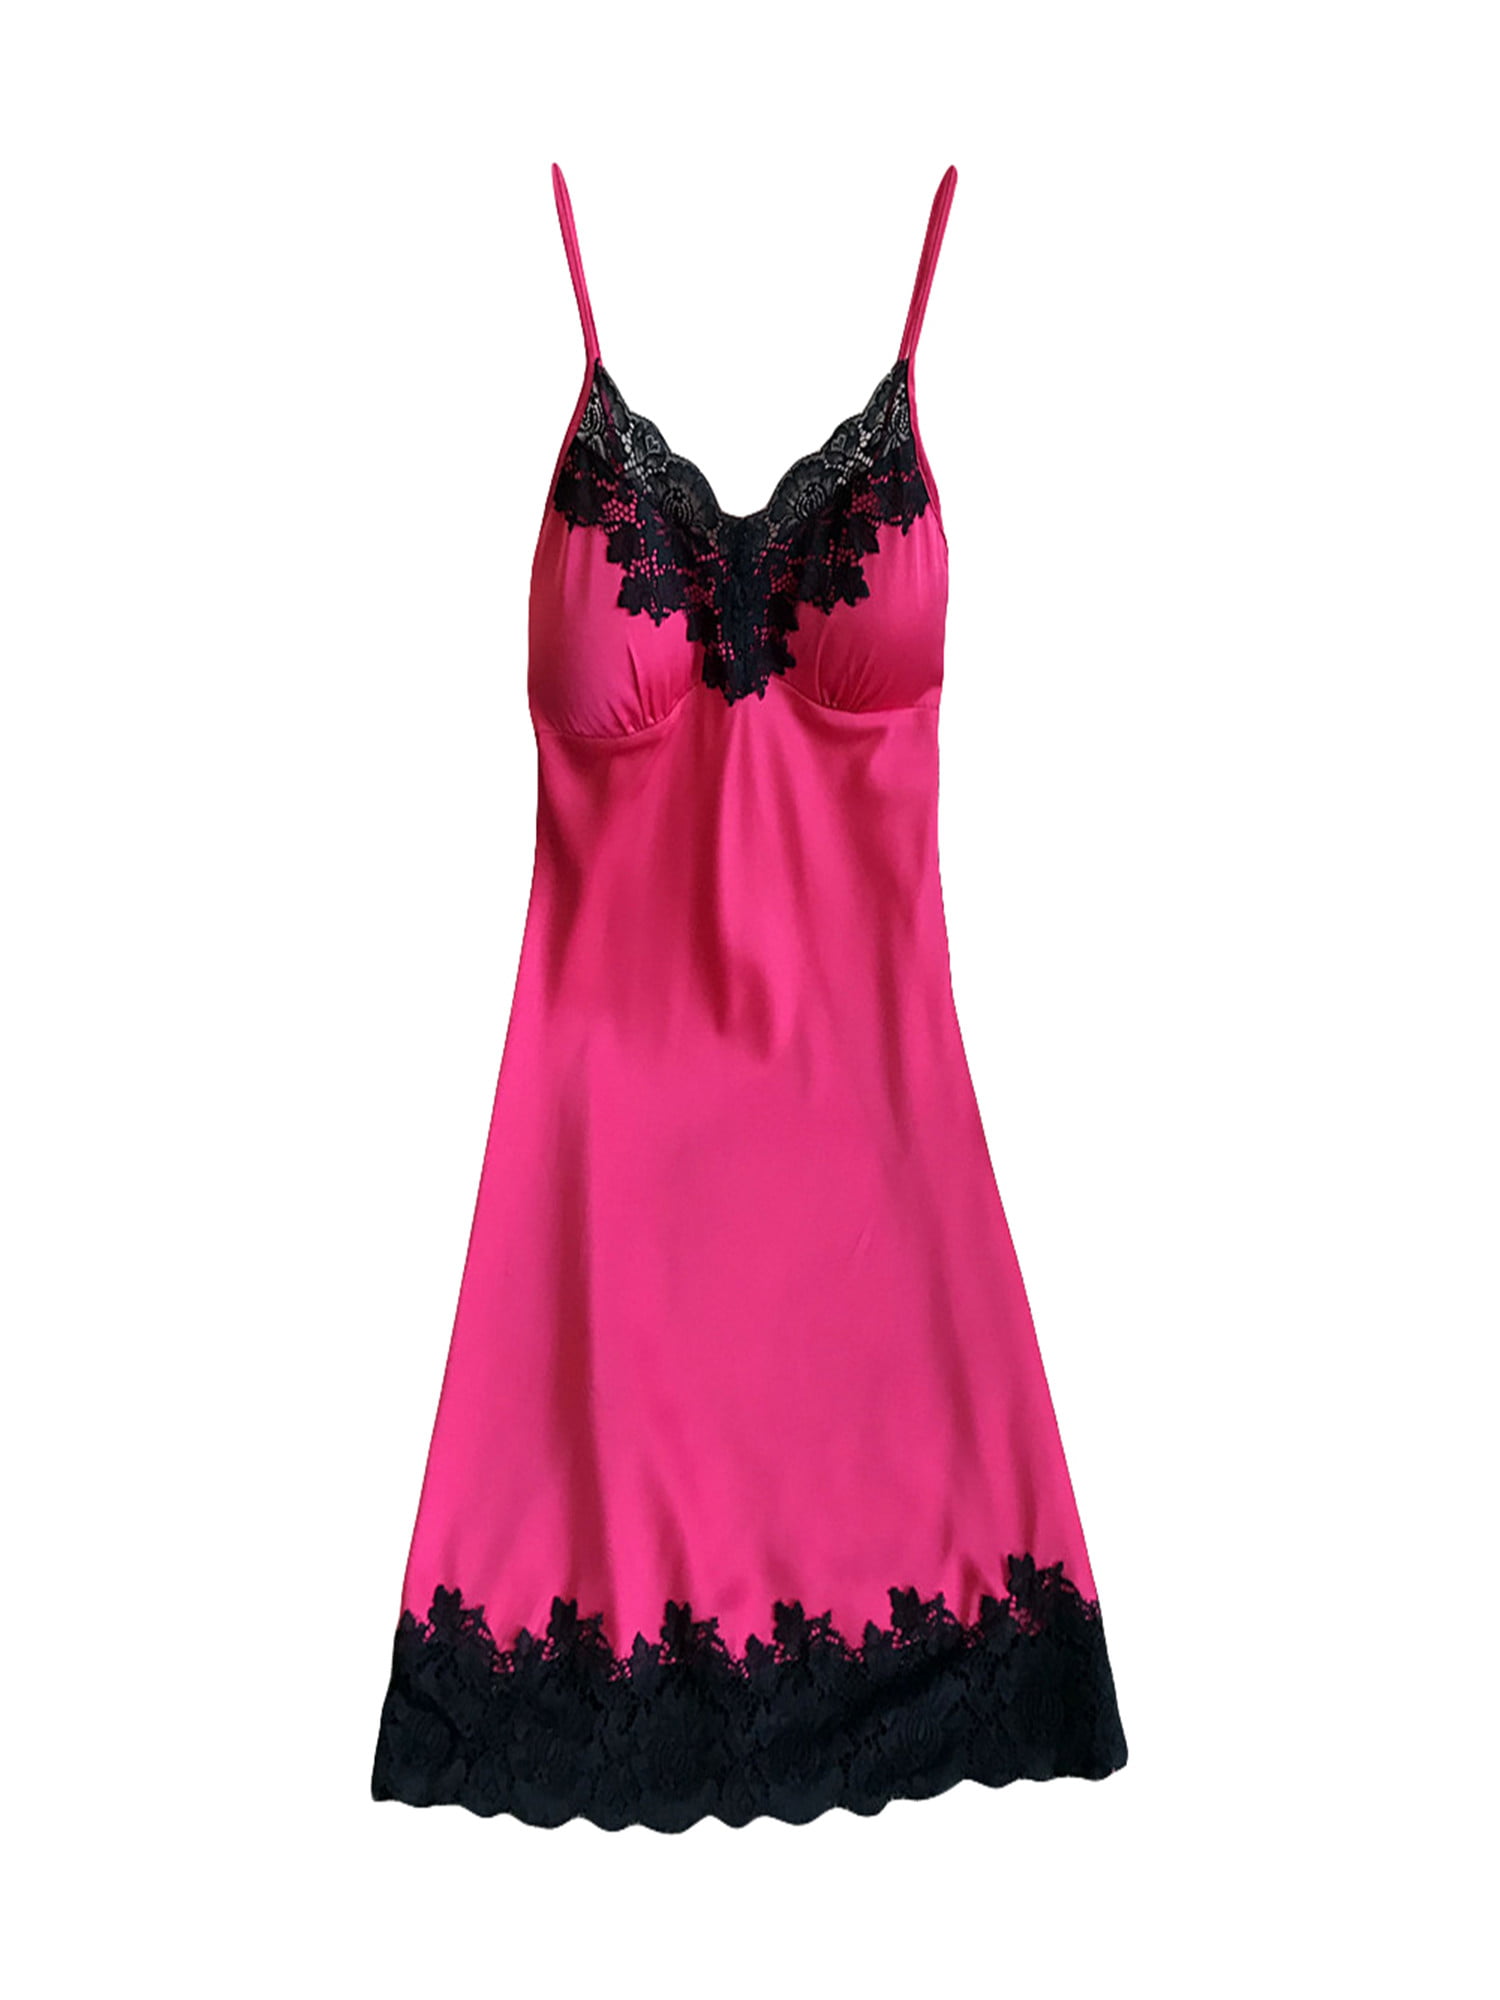 FINELOOK Women Lingerie Silk Satin Lace Babydoll Nightdress Sleepwear ...